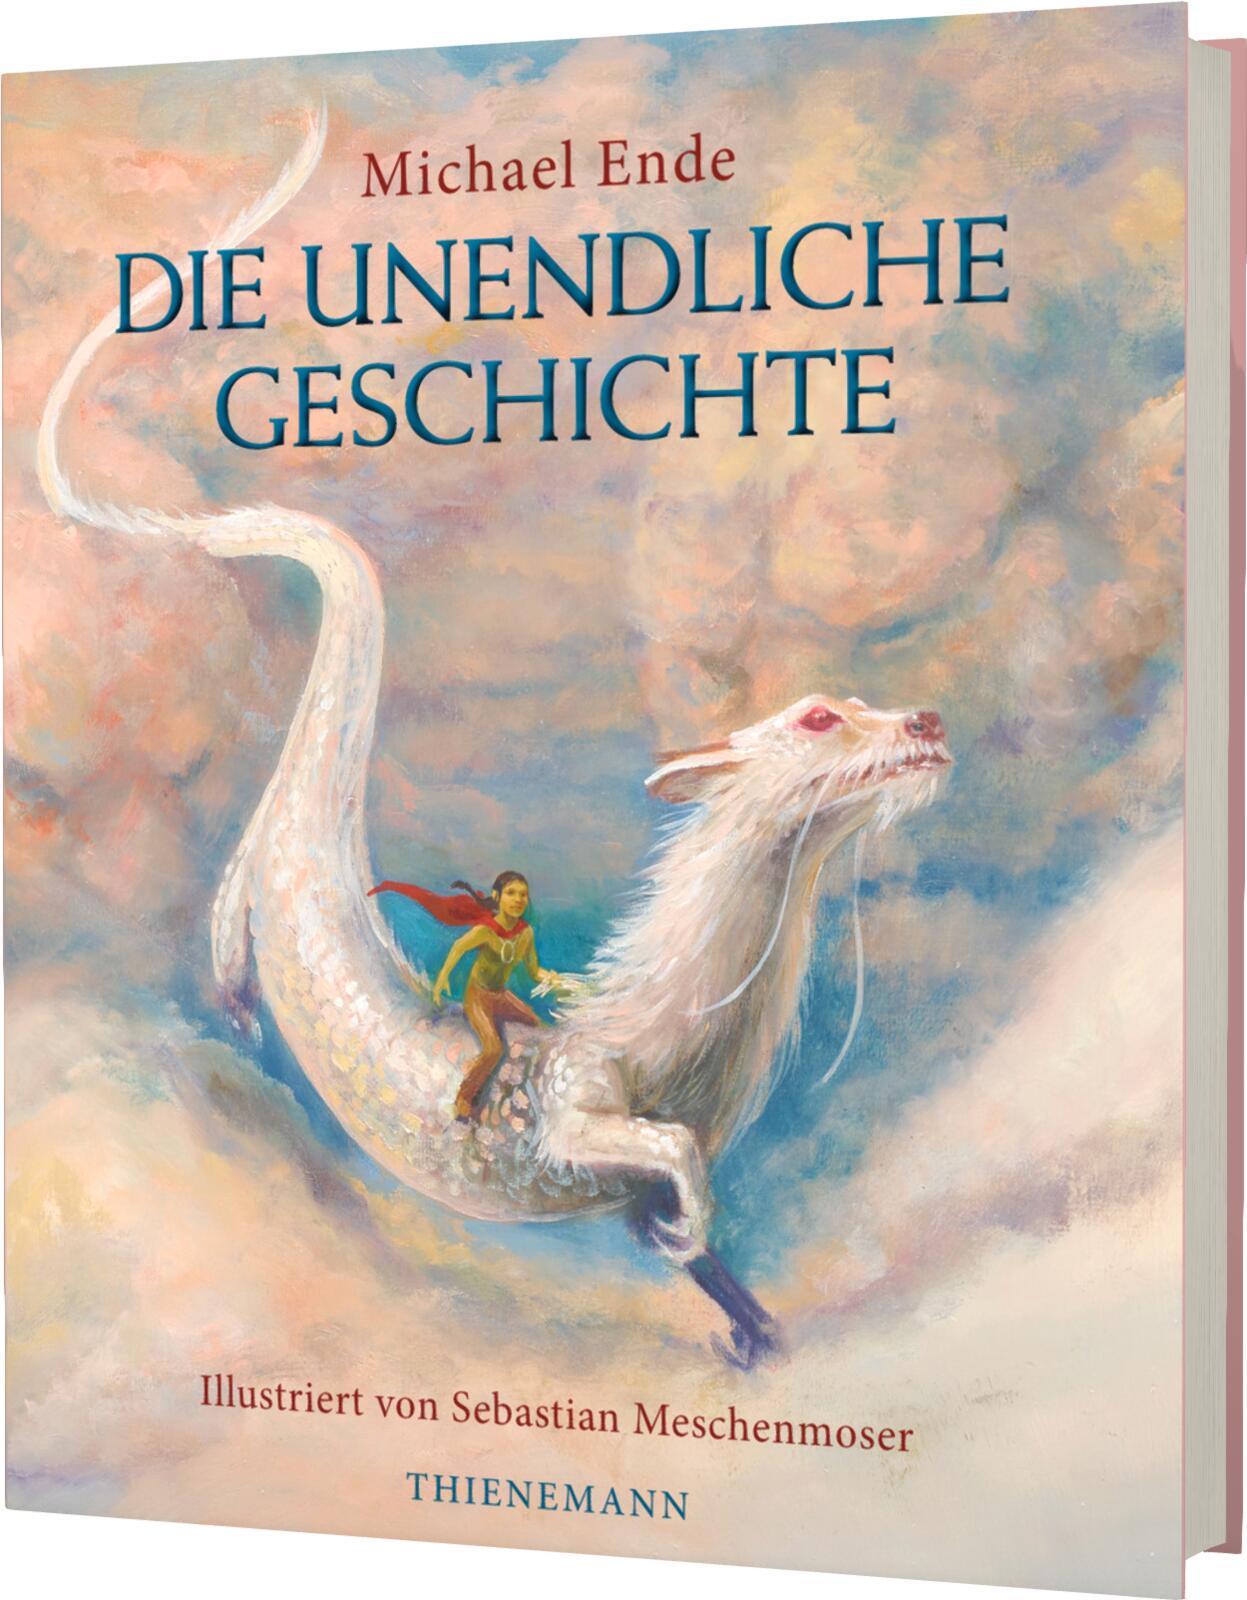 Die unendliche Geschichte (illustriert von S. Meschenmoser) Ausgezeichnet mit dem Jugendbuchpreis Buxtehuder Bulle 1979 u. a.